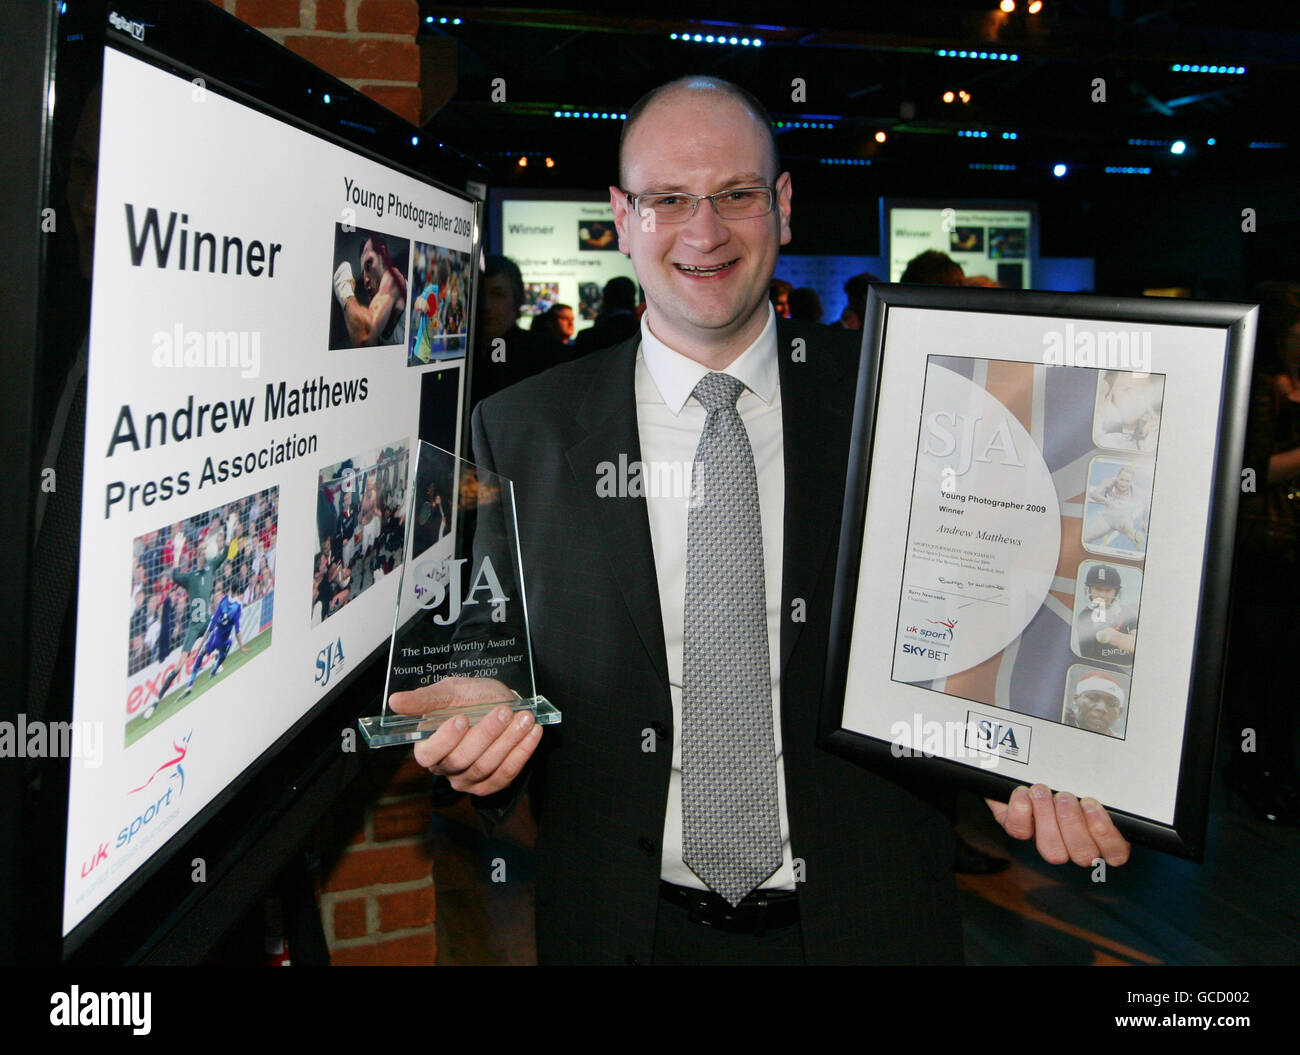 NUR ZUR INTERNEN VERWENDUNG VON PA. Presseverband Fotograf Andy Matthews mit seiner Auszeichnung für den jungen Fotografen des Jahres bei den Sports Journalism Awards. Stockfoto